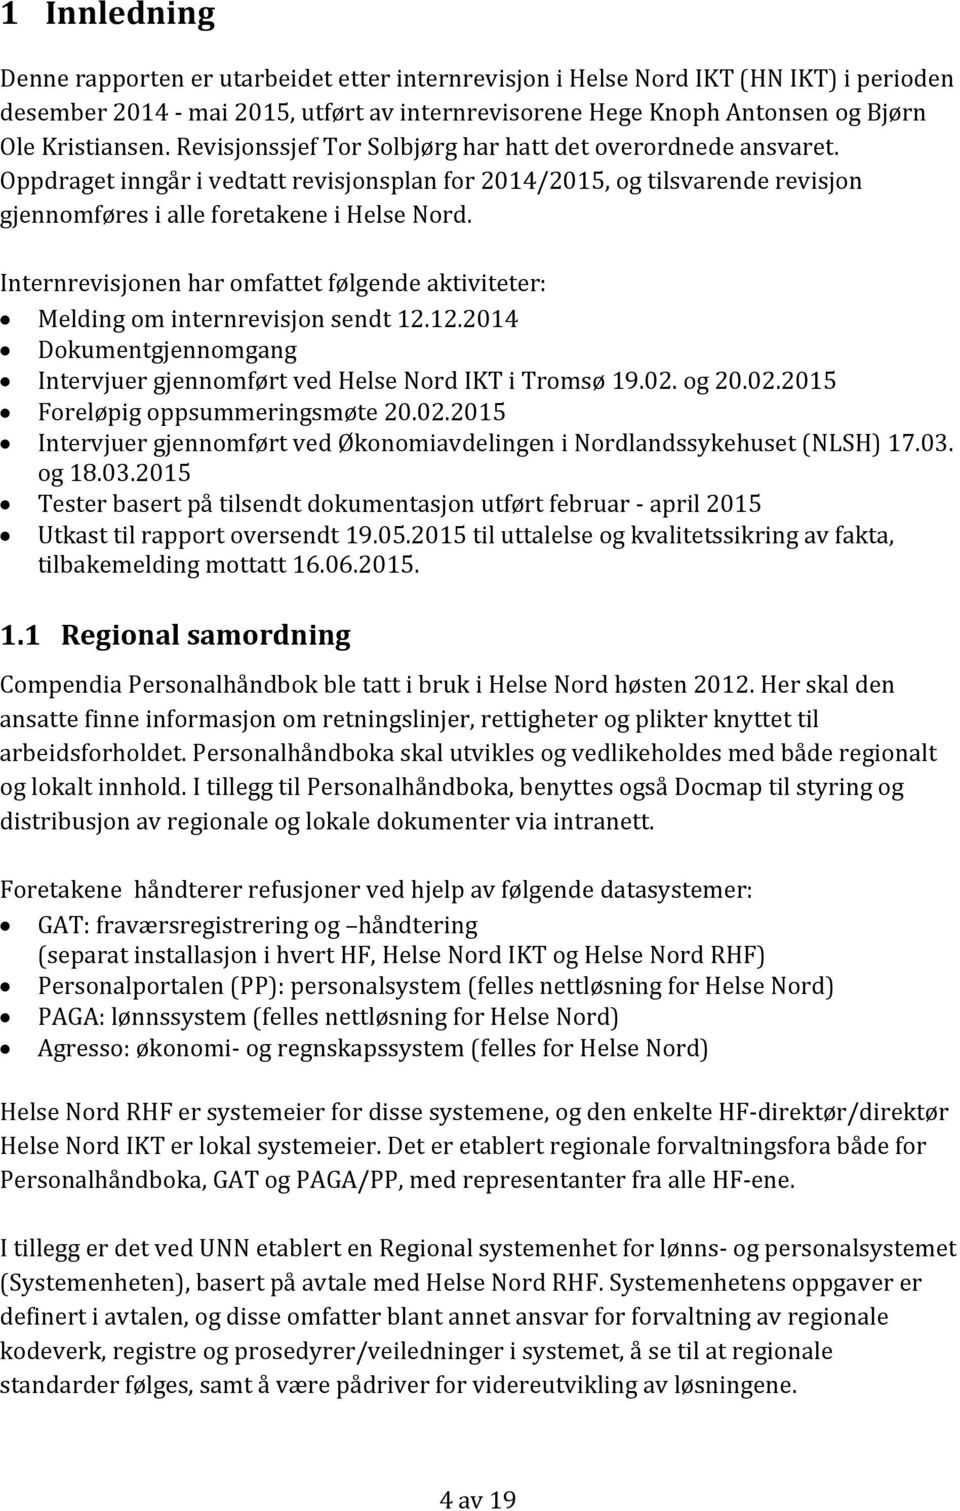 Internrevisjonen har omfattet følgende aktiviteter: Melding om internrevisjon sendt 12.12.2014 Dokumentgjennomgang Intervjuer gjennomført ved Helse Nord IKT i Tromsø 19.02.